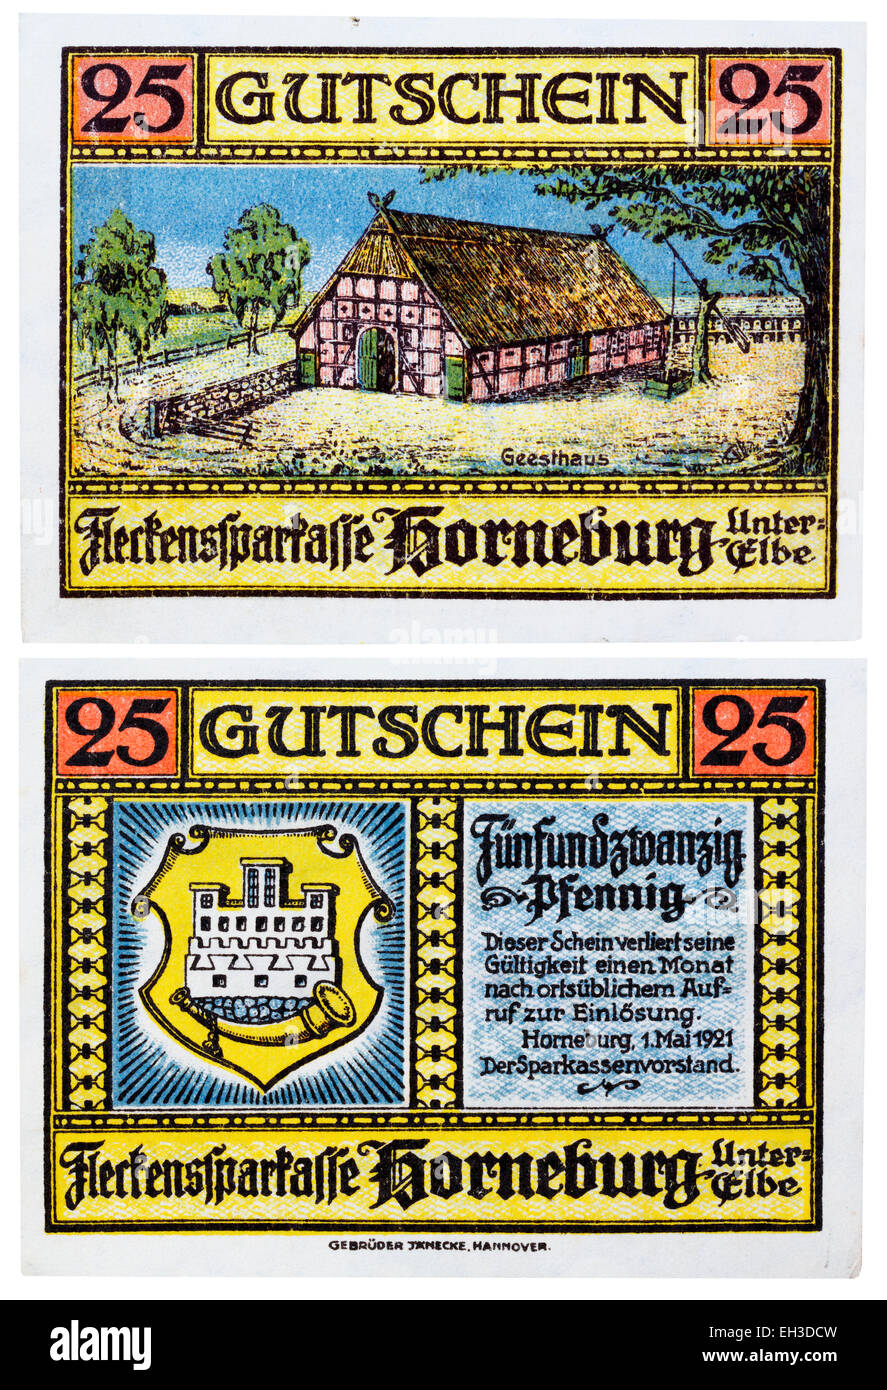 25 pfennig, notgeld banknote, Horneburg, Lower Saxony, Germany, 1921 Stock Photo